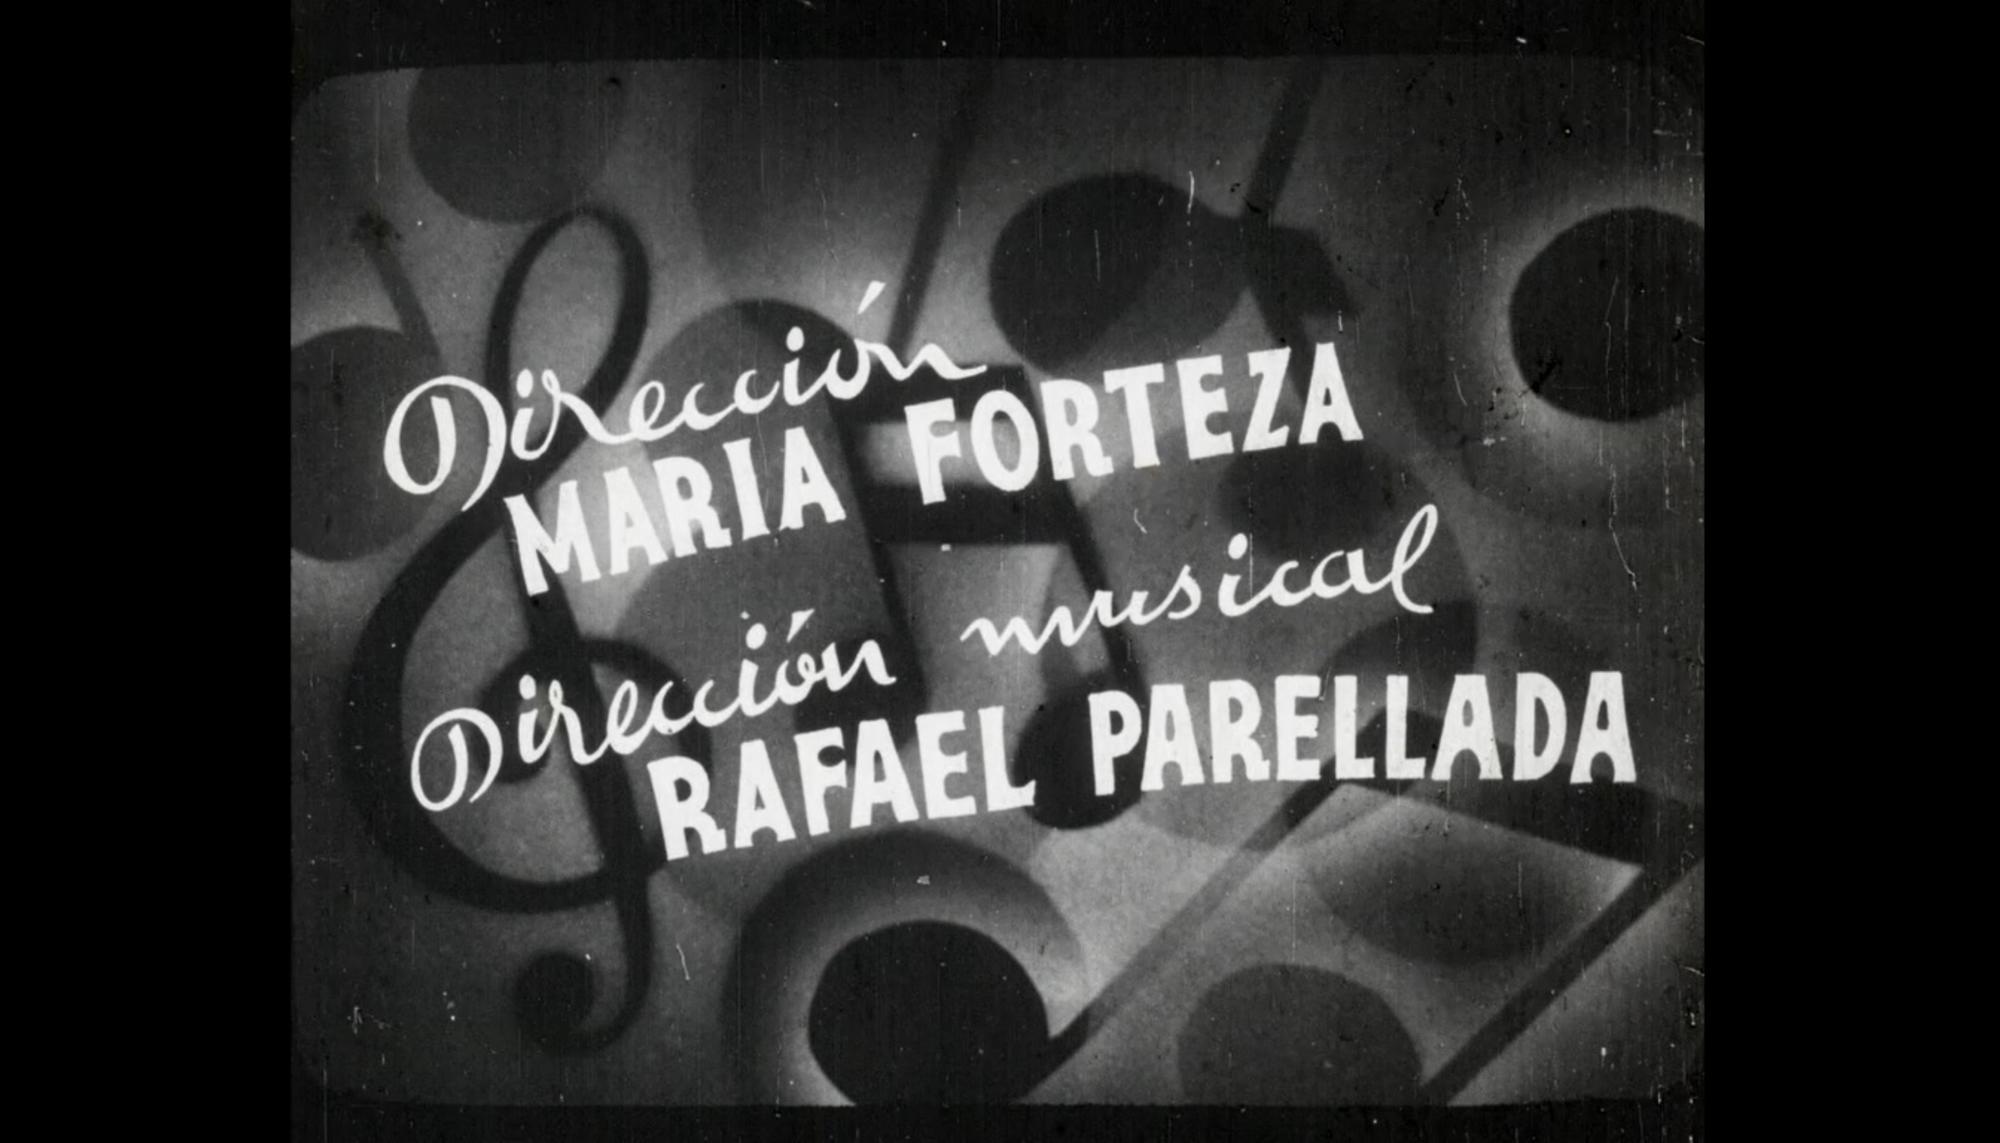 Fotograma de ‘Mallorca’, un corto dirigido por María Forteza entre 1932 y 1934